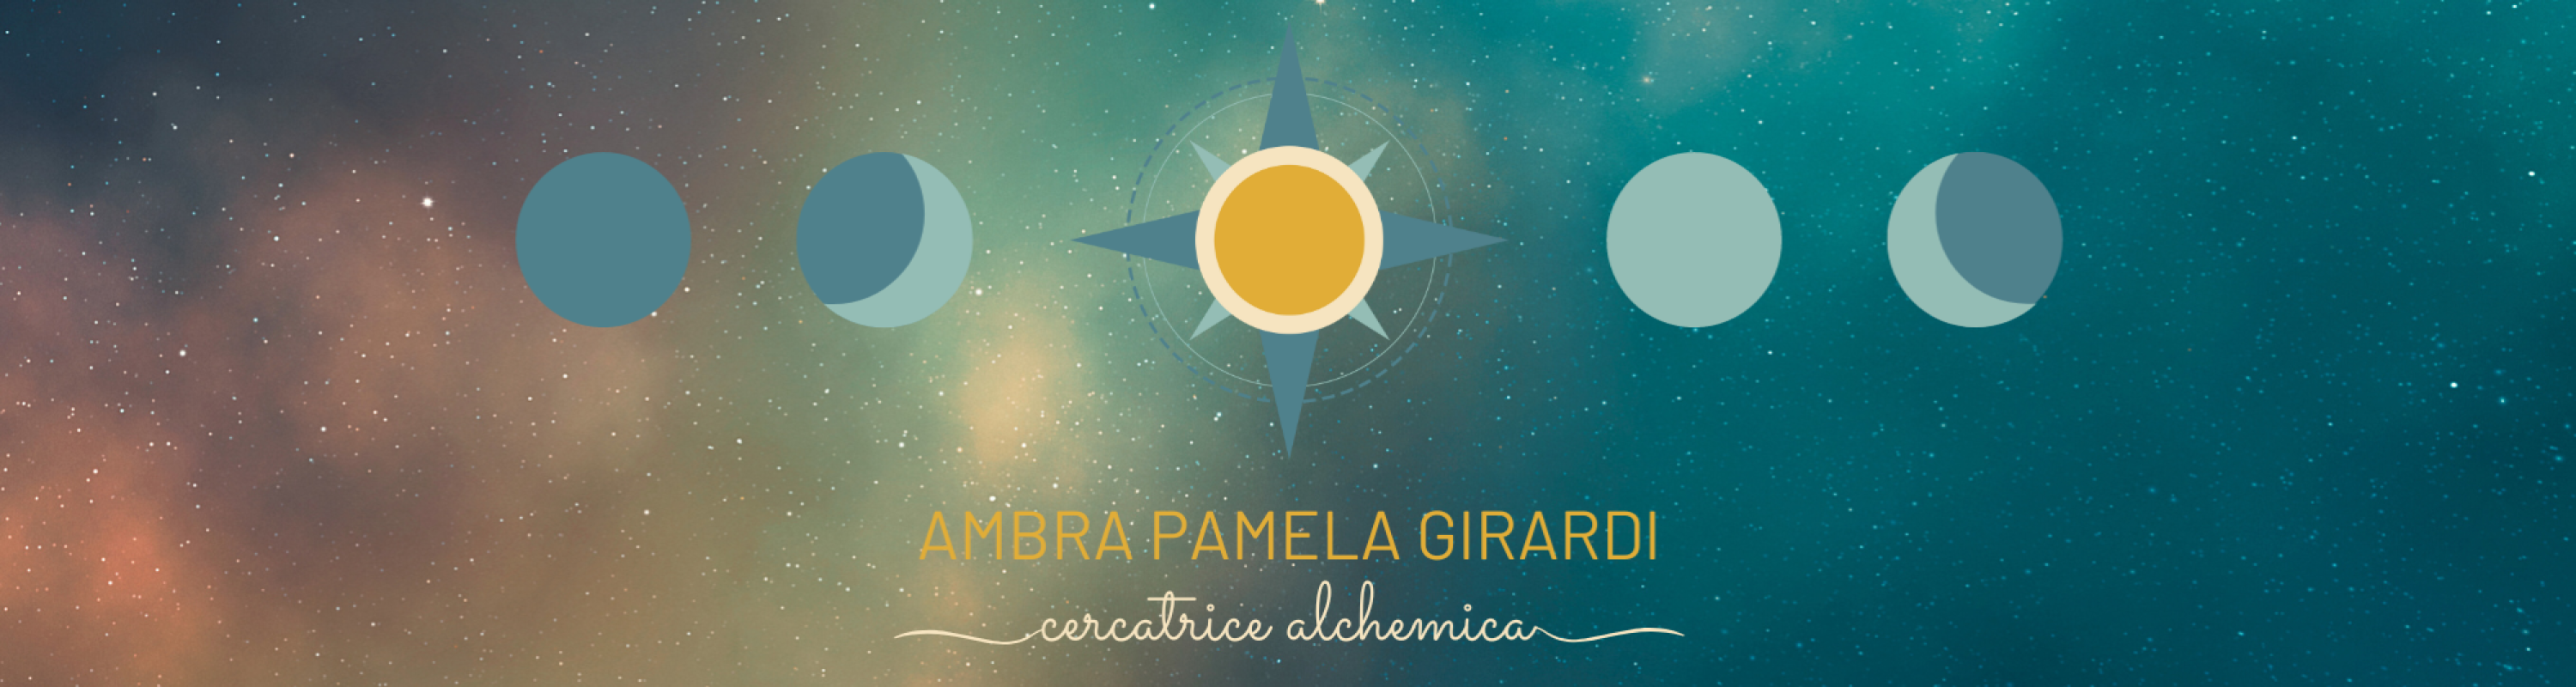 cropped-logo-ambra-pamela-girardi.png